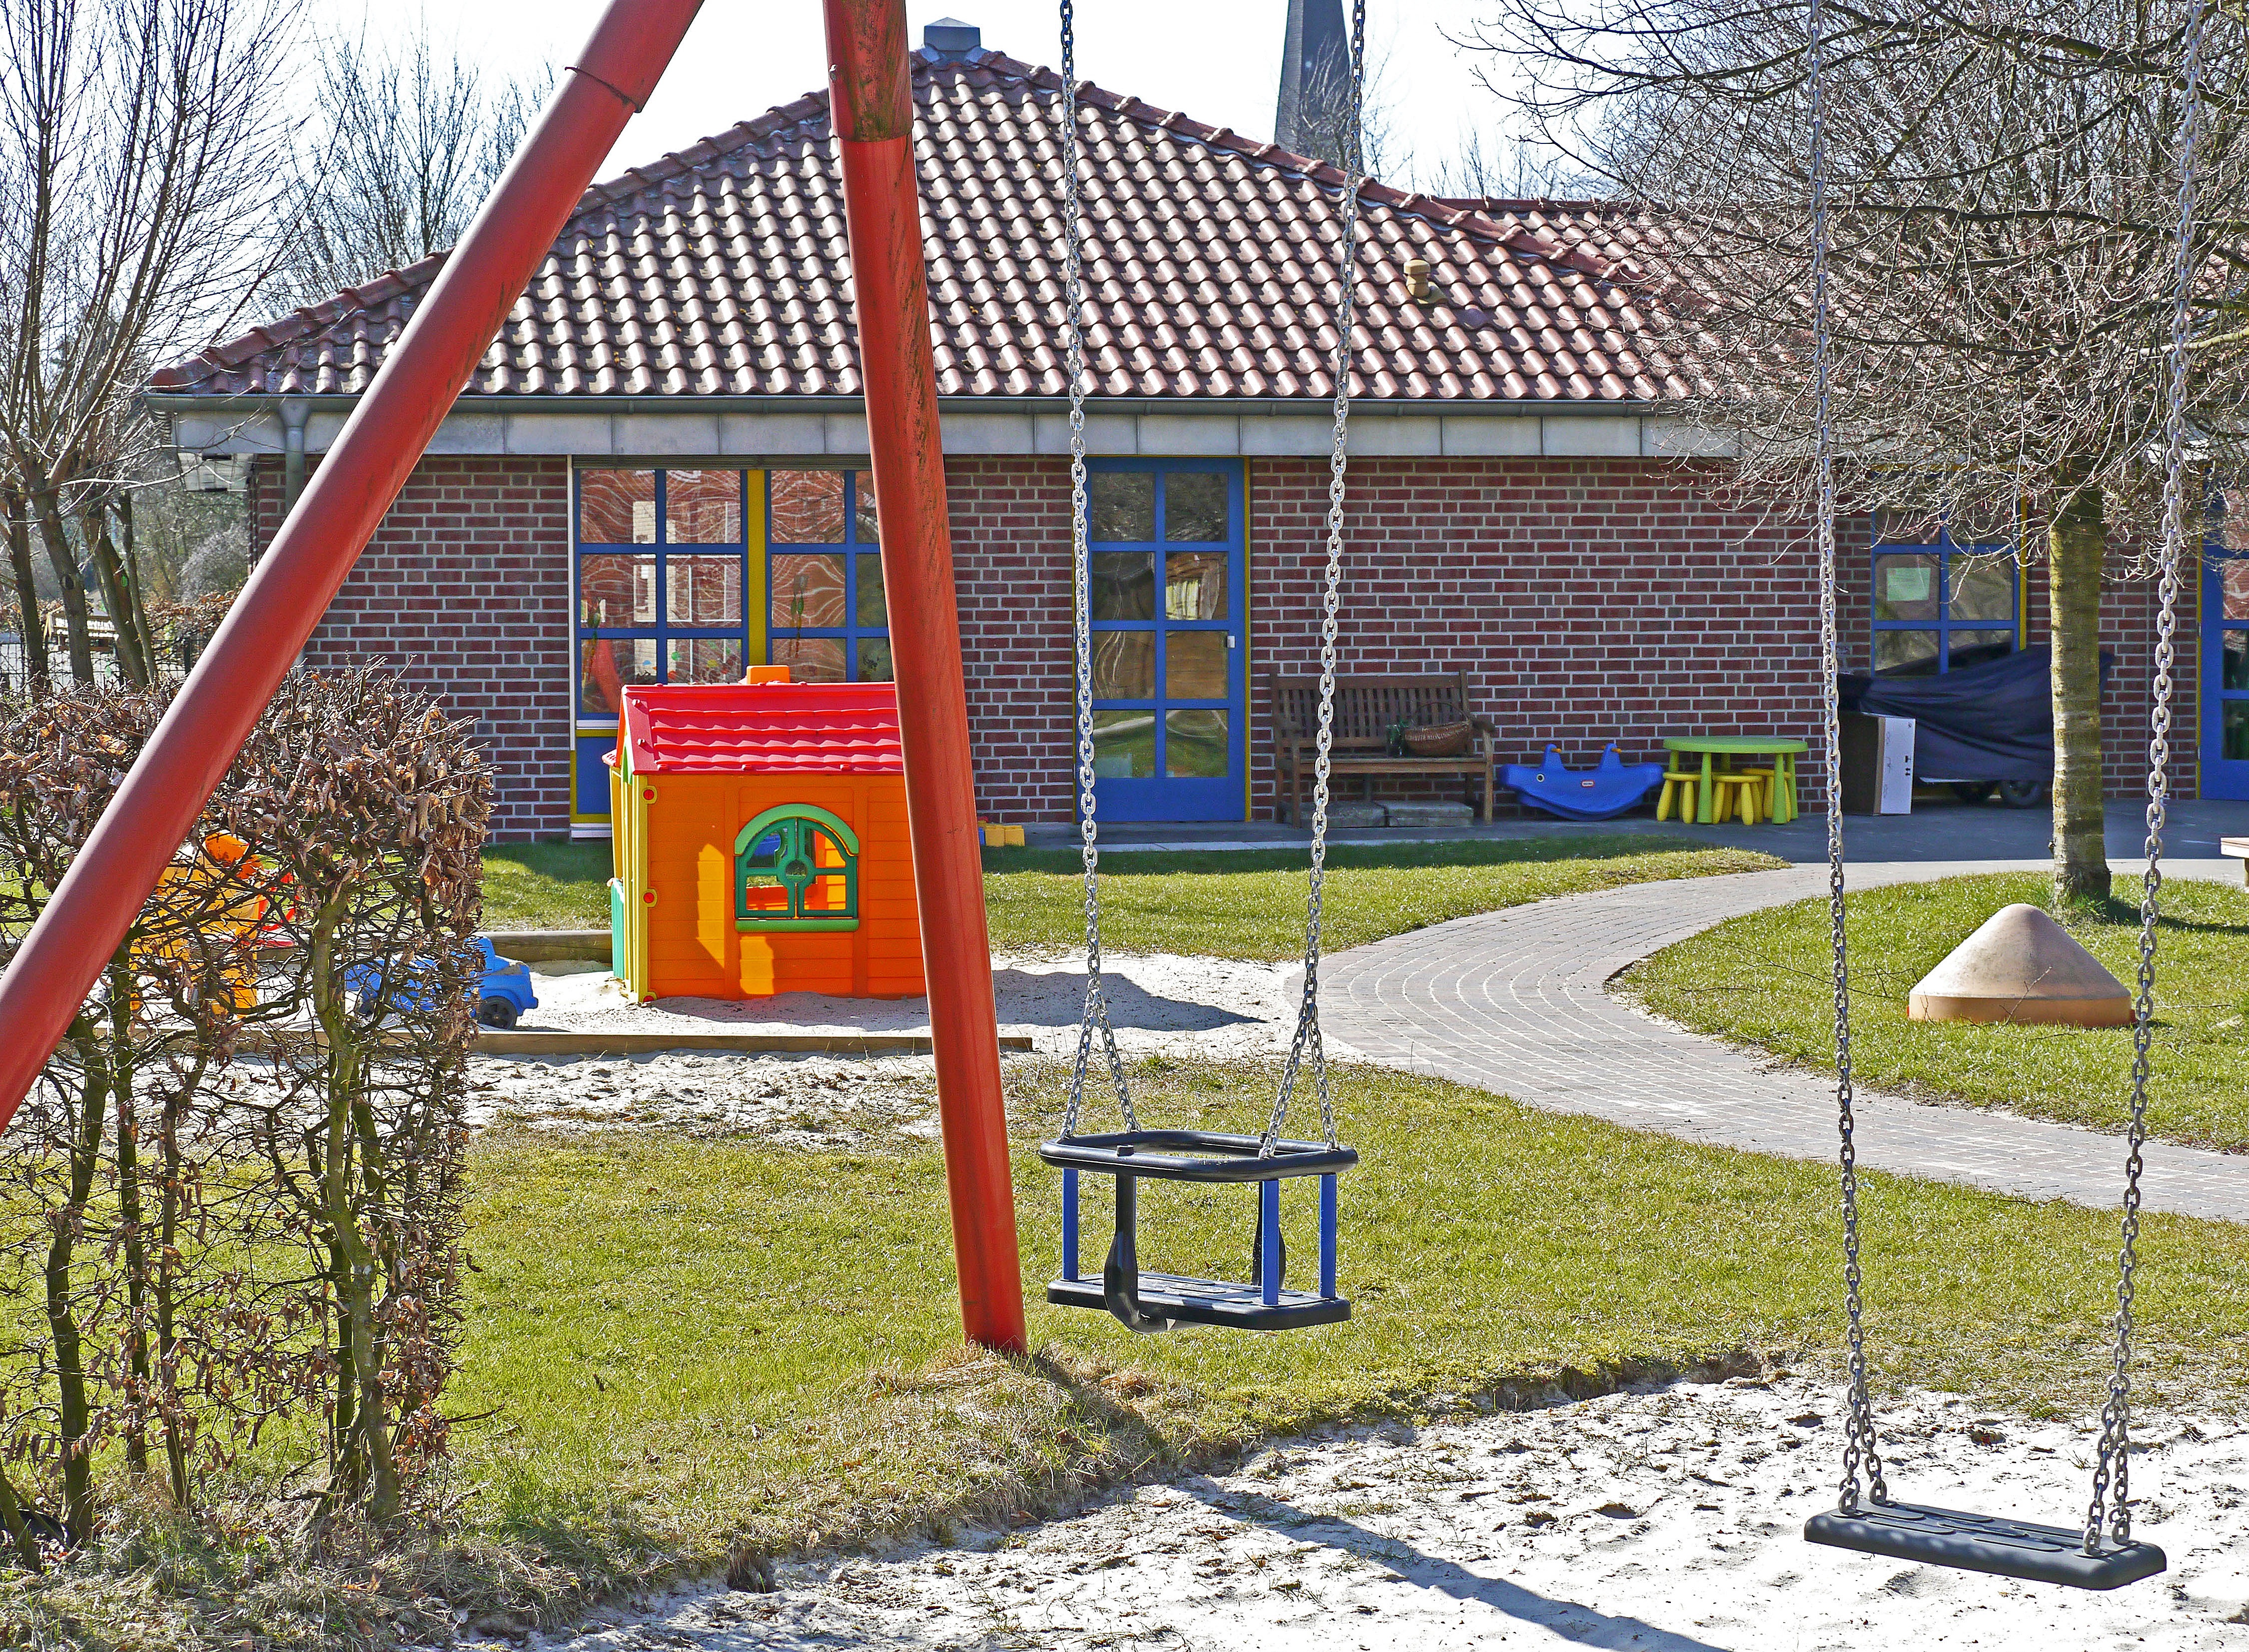 La imagen muestra una zona de juegos con césped, un columpio y una caseta de juguete.